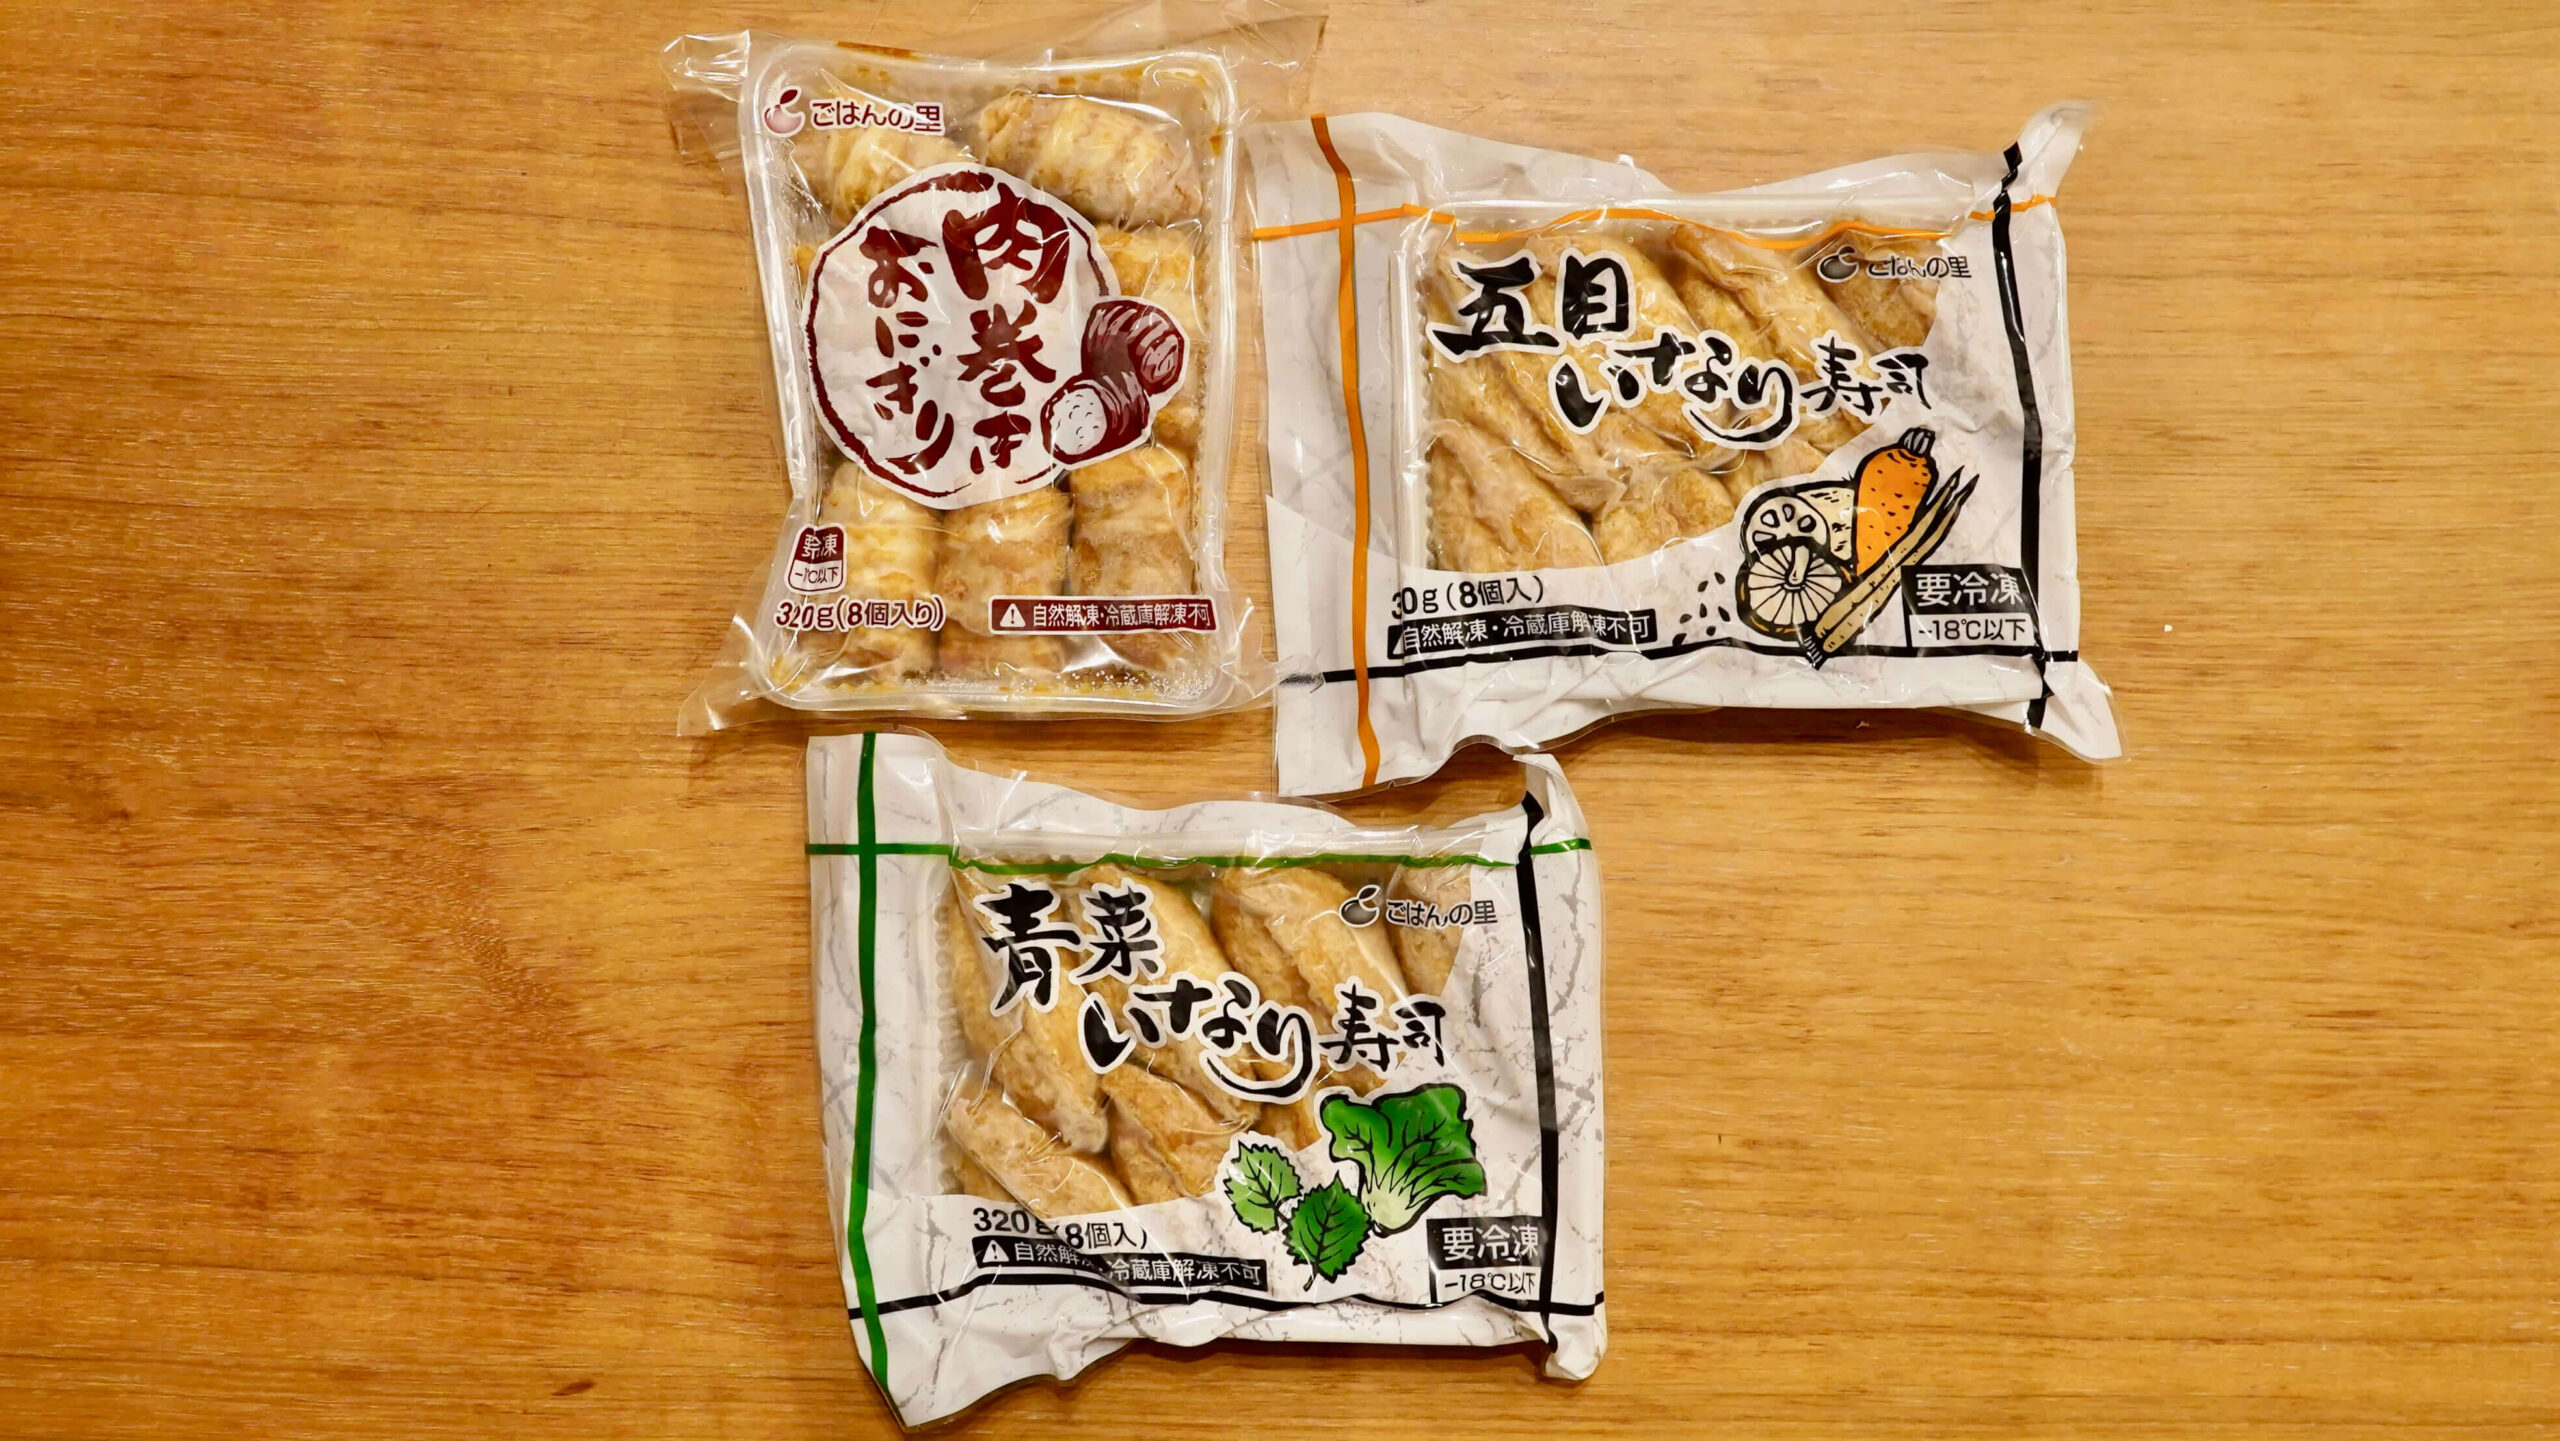 「ごはんの里」の冷凍食品「五目いなり寿司」のお試しセットの写真